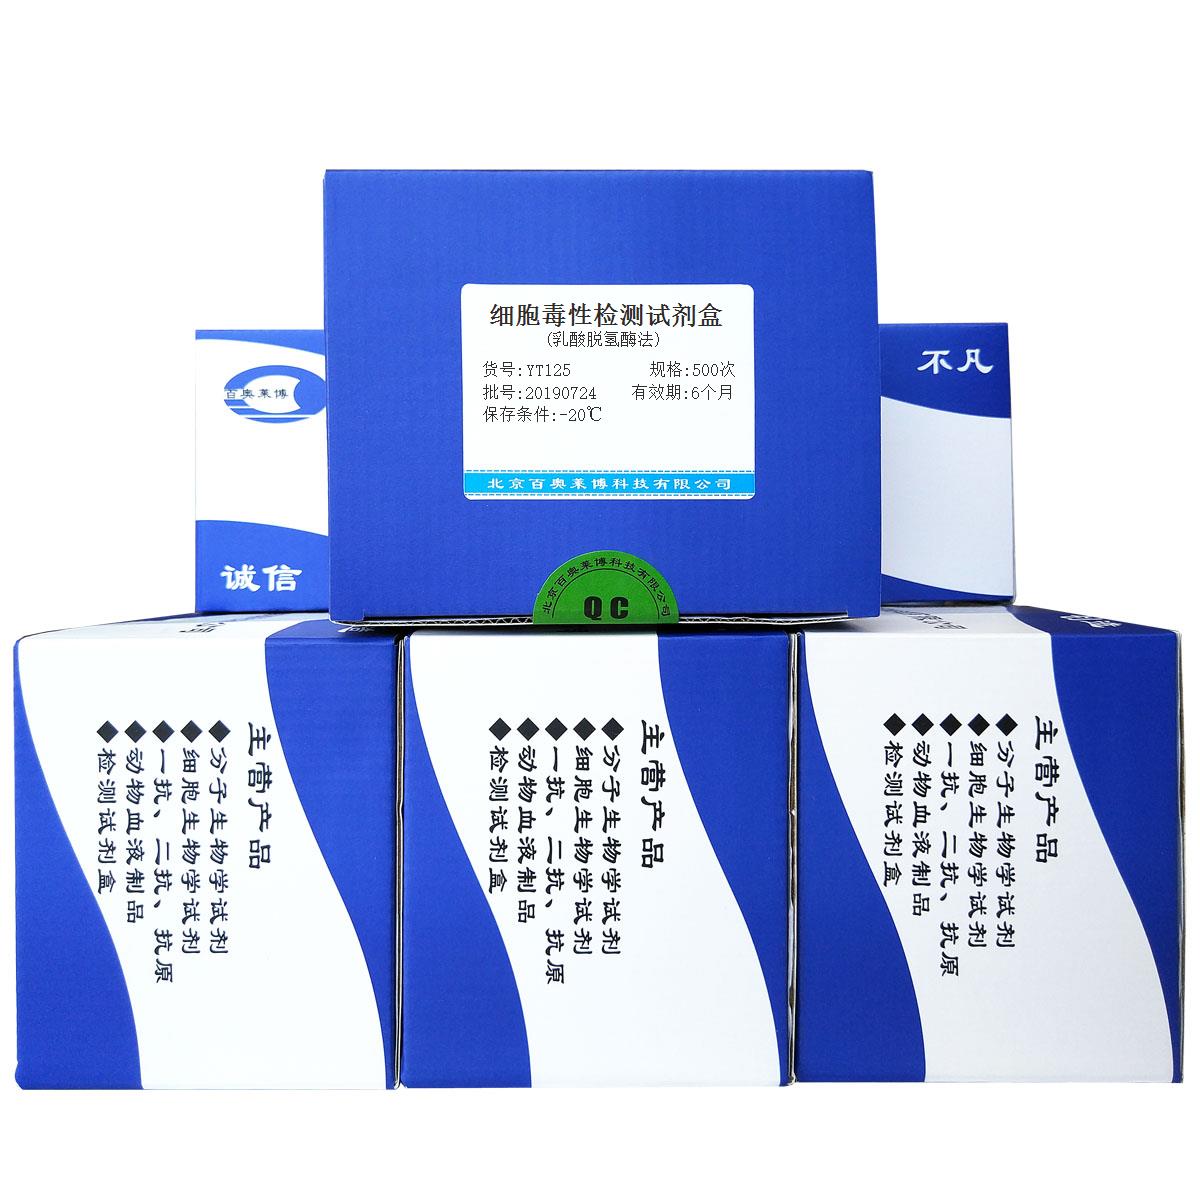 细胞毒性检测试剂盒(乳酸脱氢酶法)北京供应商